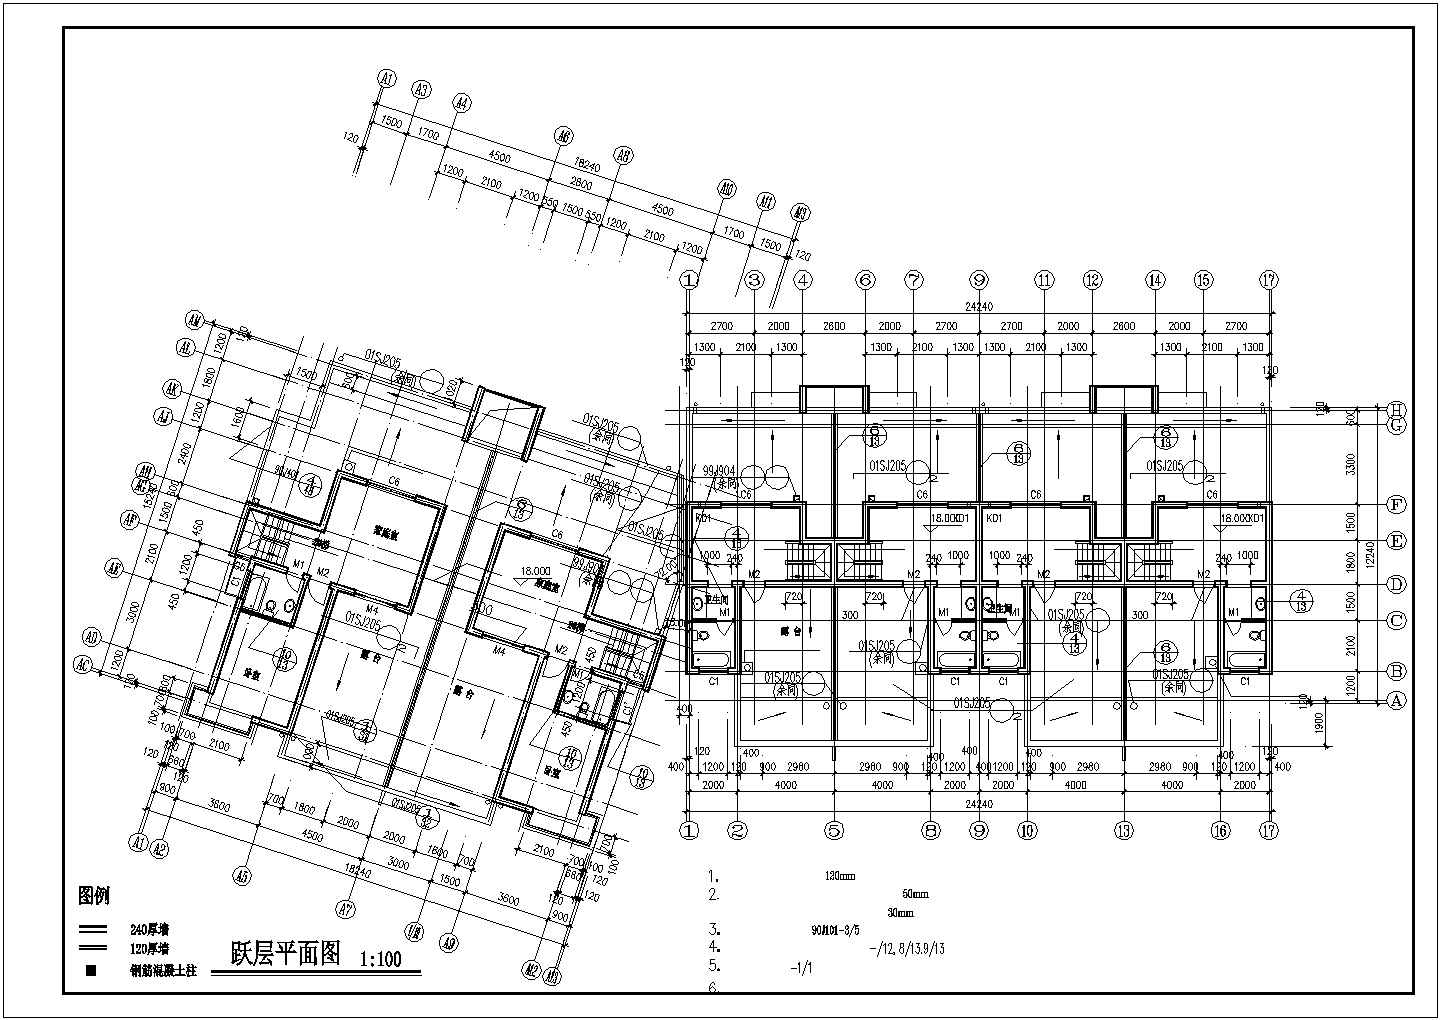 占地870平米6层砖混结构住宅楼全套建筑设计CAD图纸